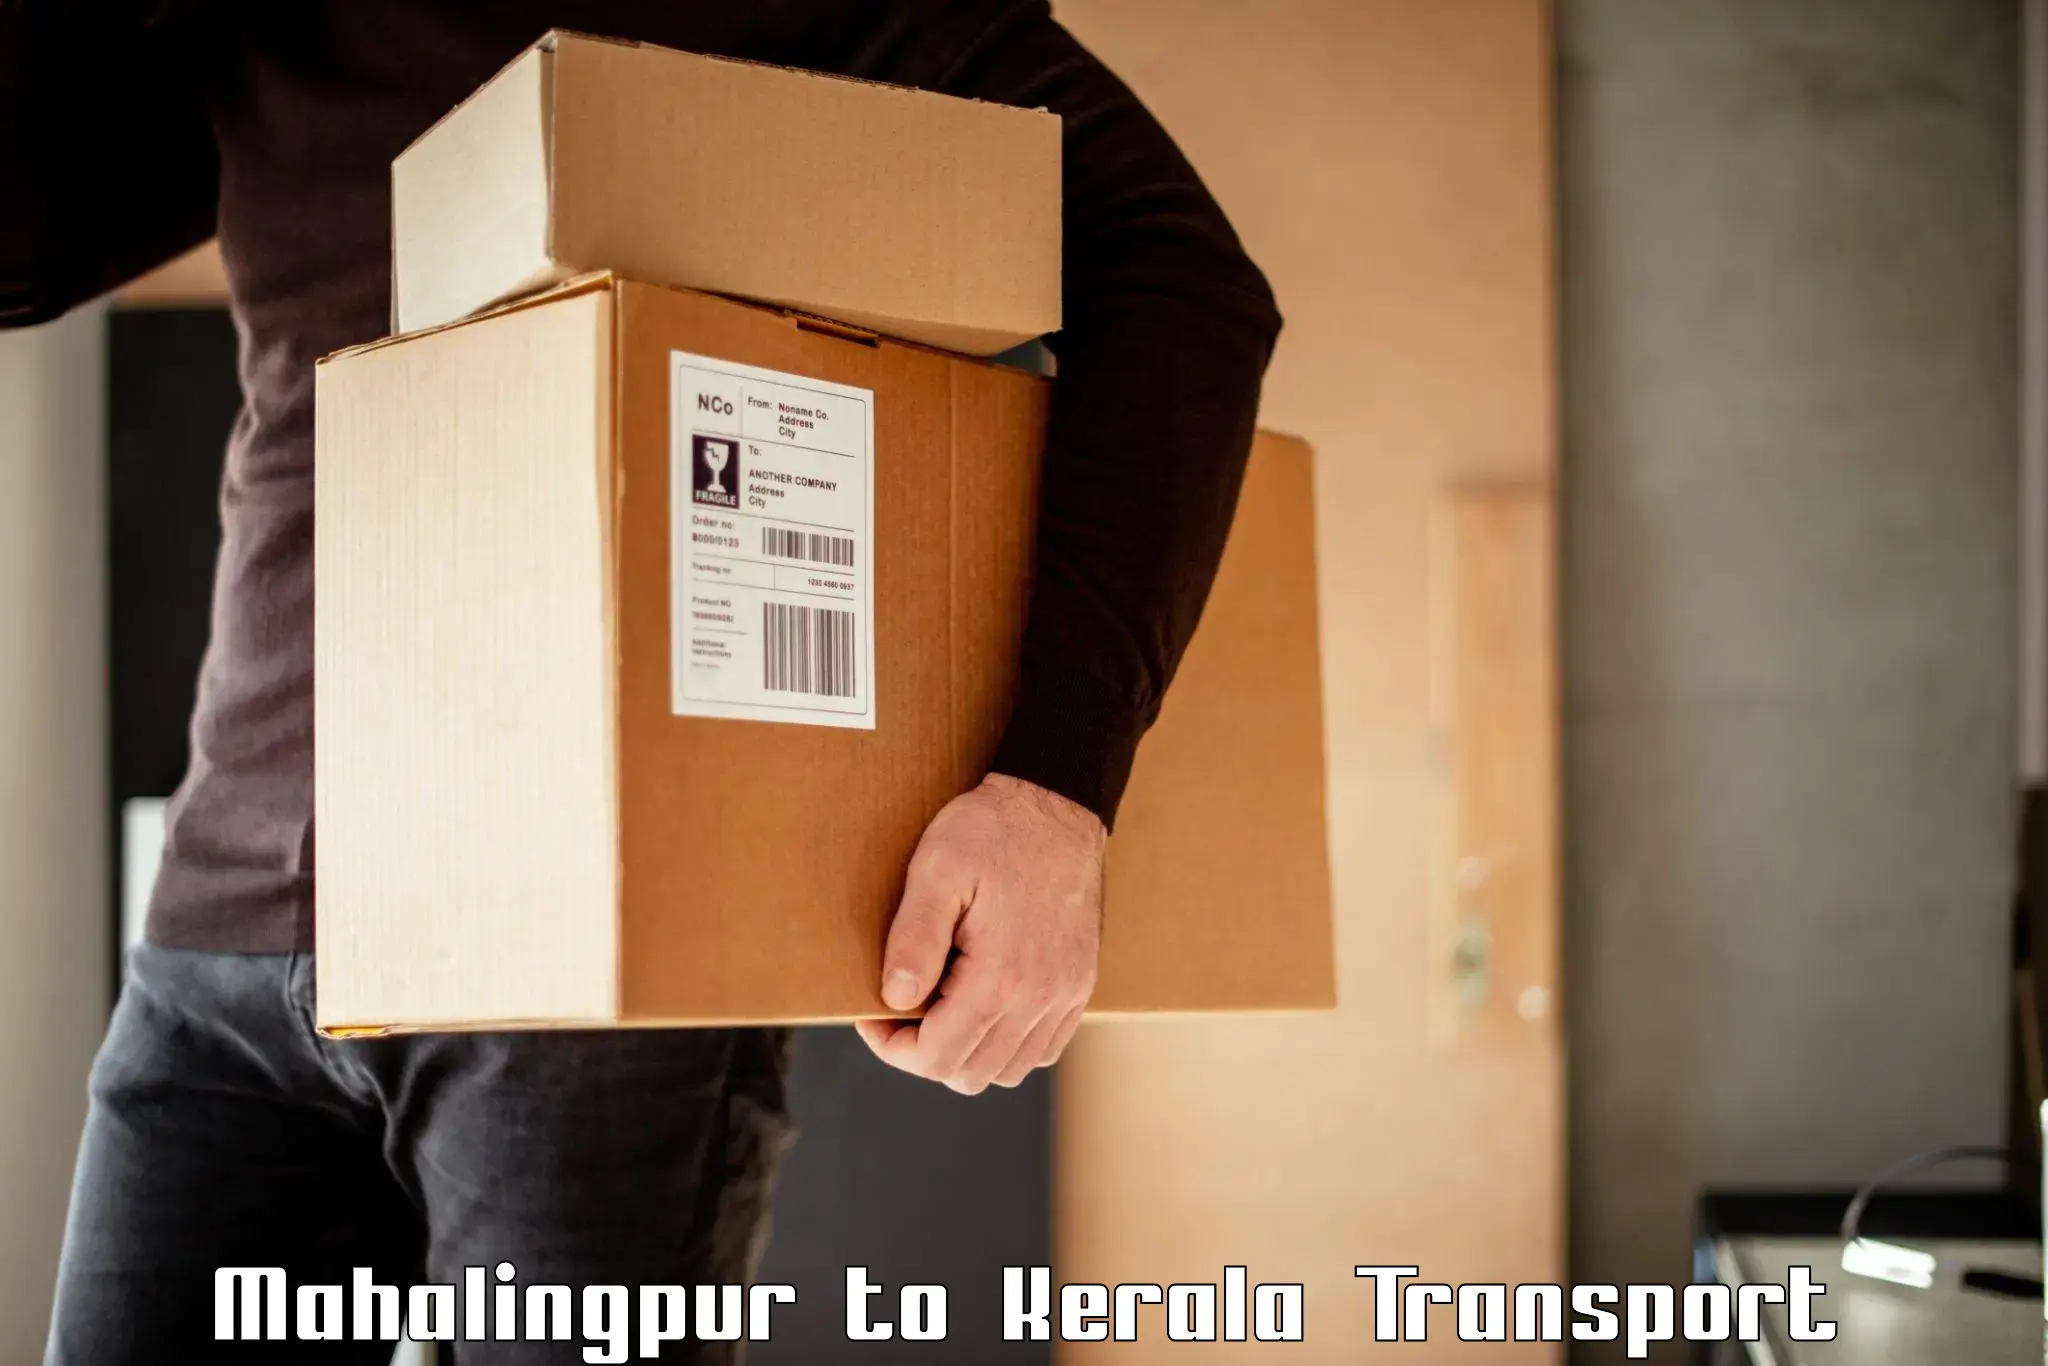 International cargo transportation services Mahalingpur to Kanjirapally